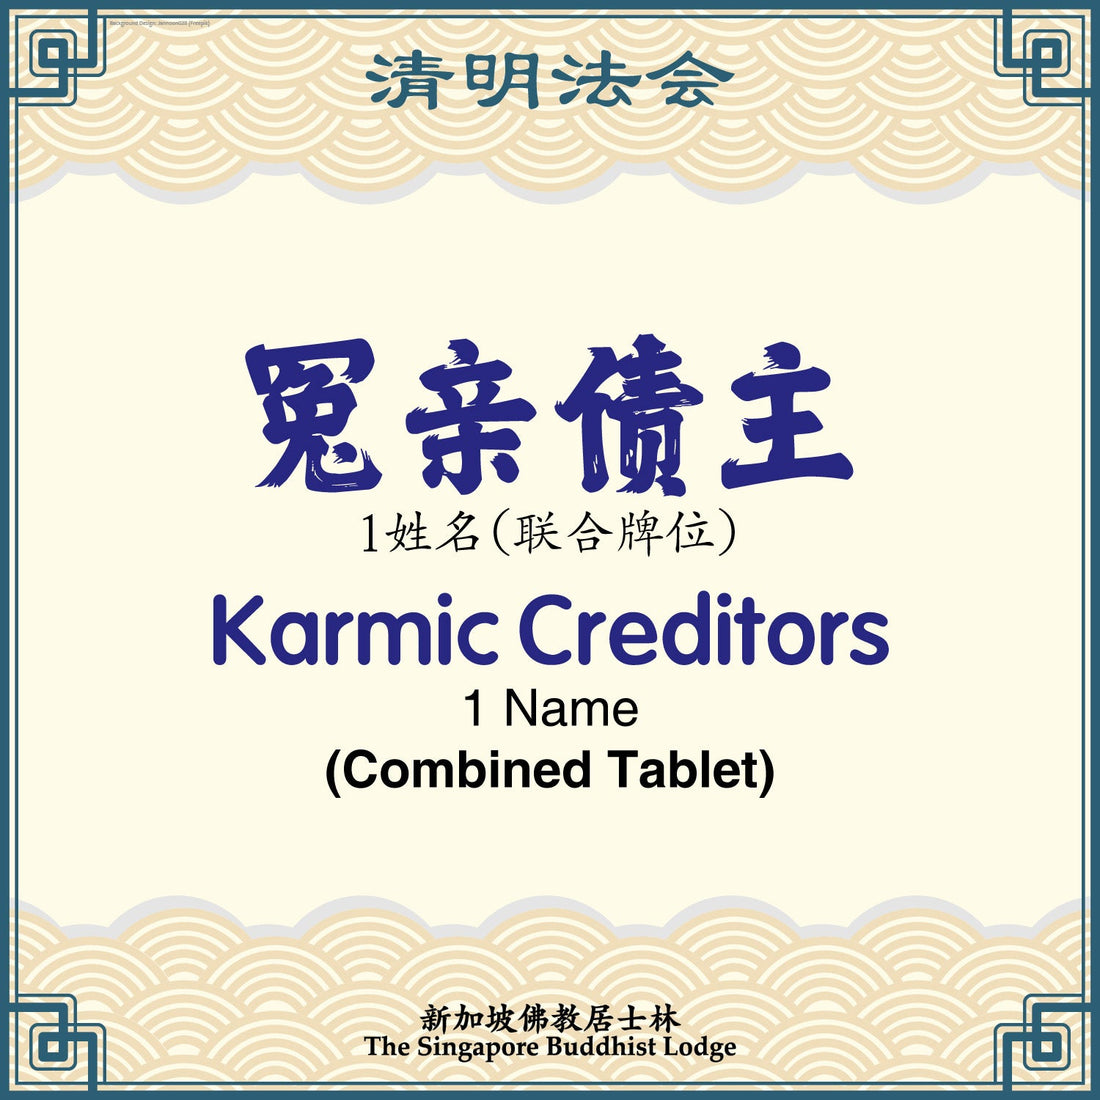 冤亲债主（联合牌位）Karmic Creditors (Combined Tablet) - Qing Ming